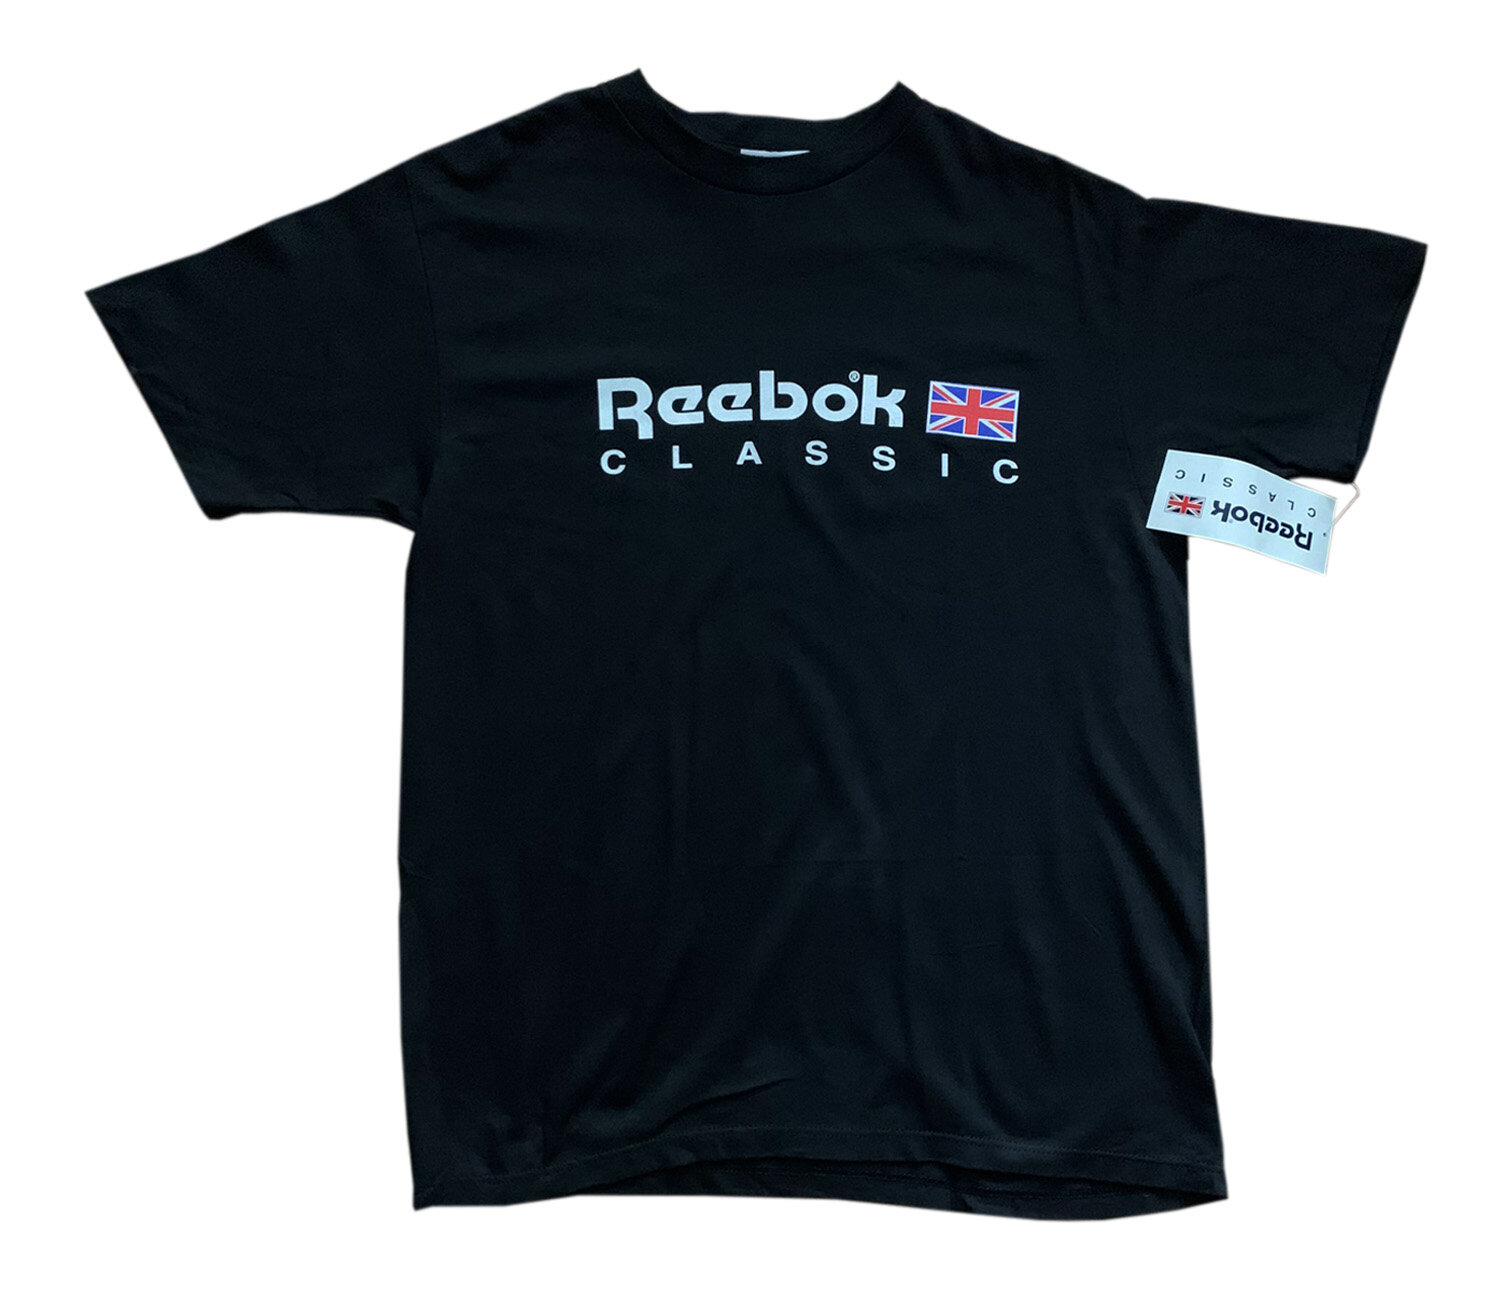 Reebok Classic T Shirt for Women